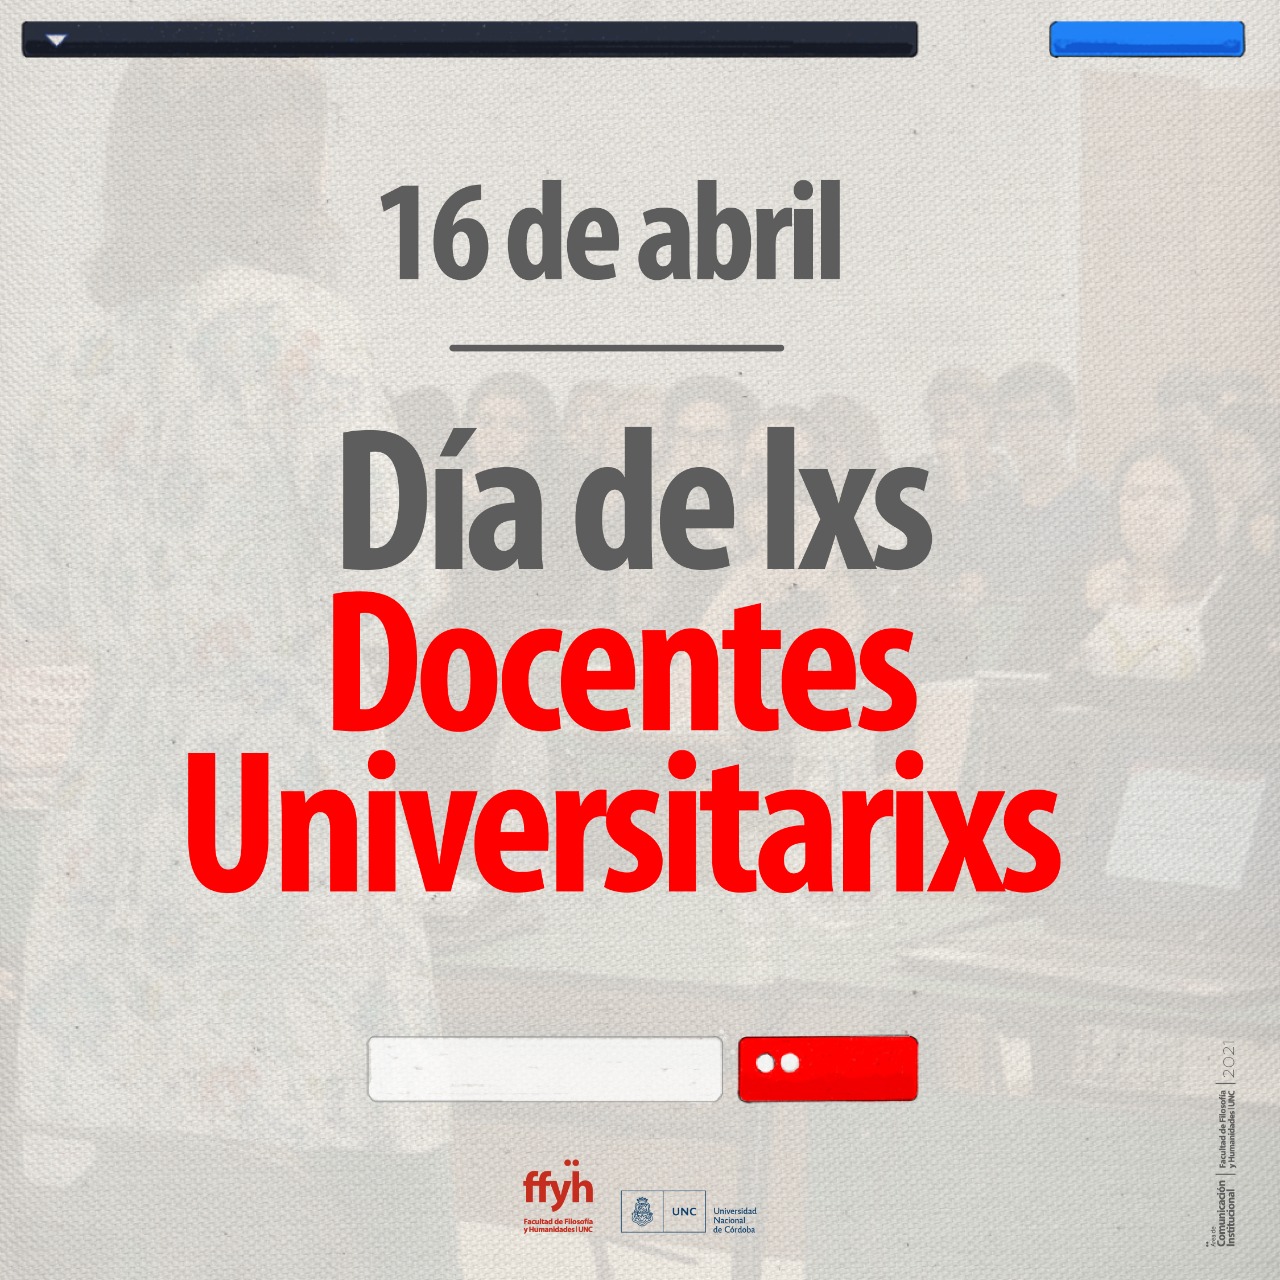 16 de abril | Día de lxs Docentes Universitarixs